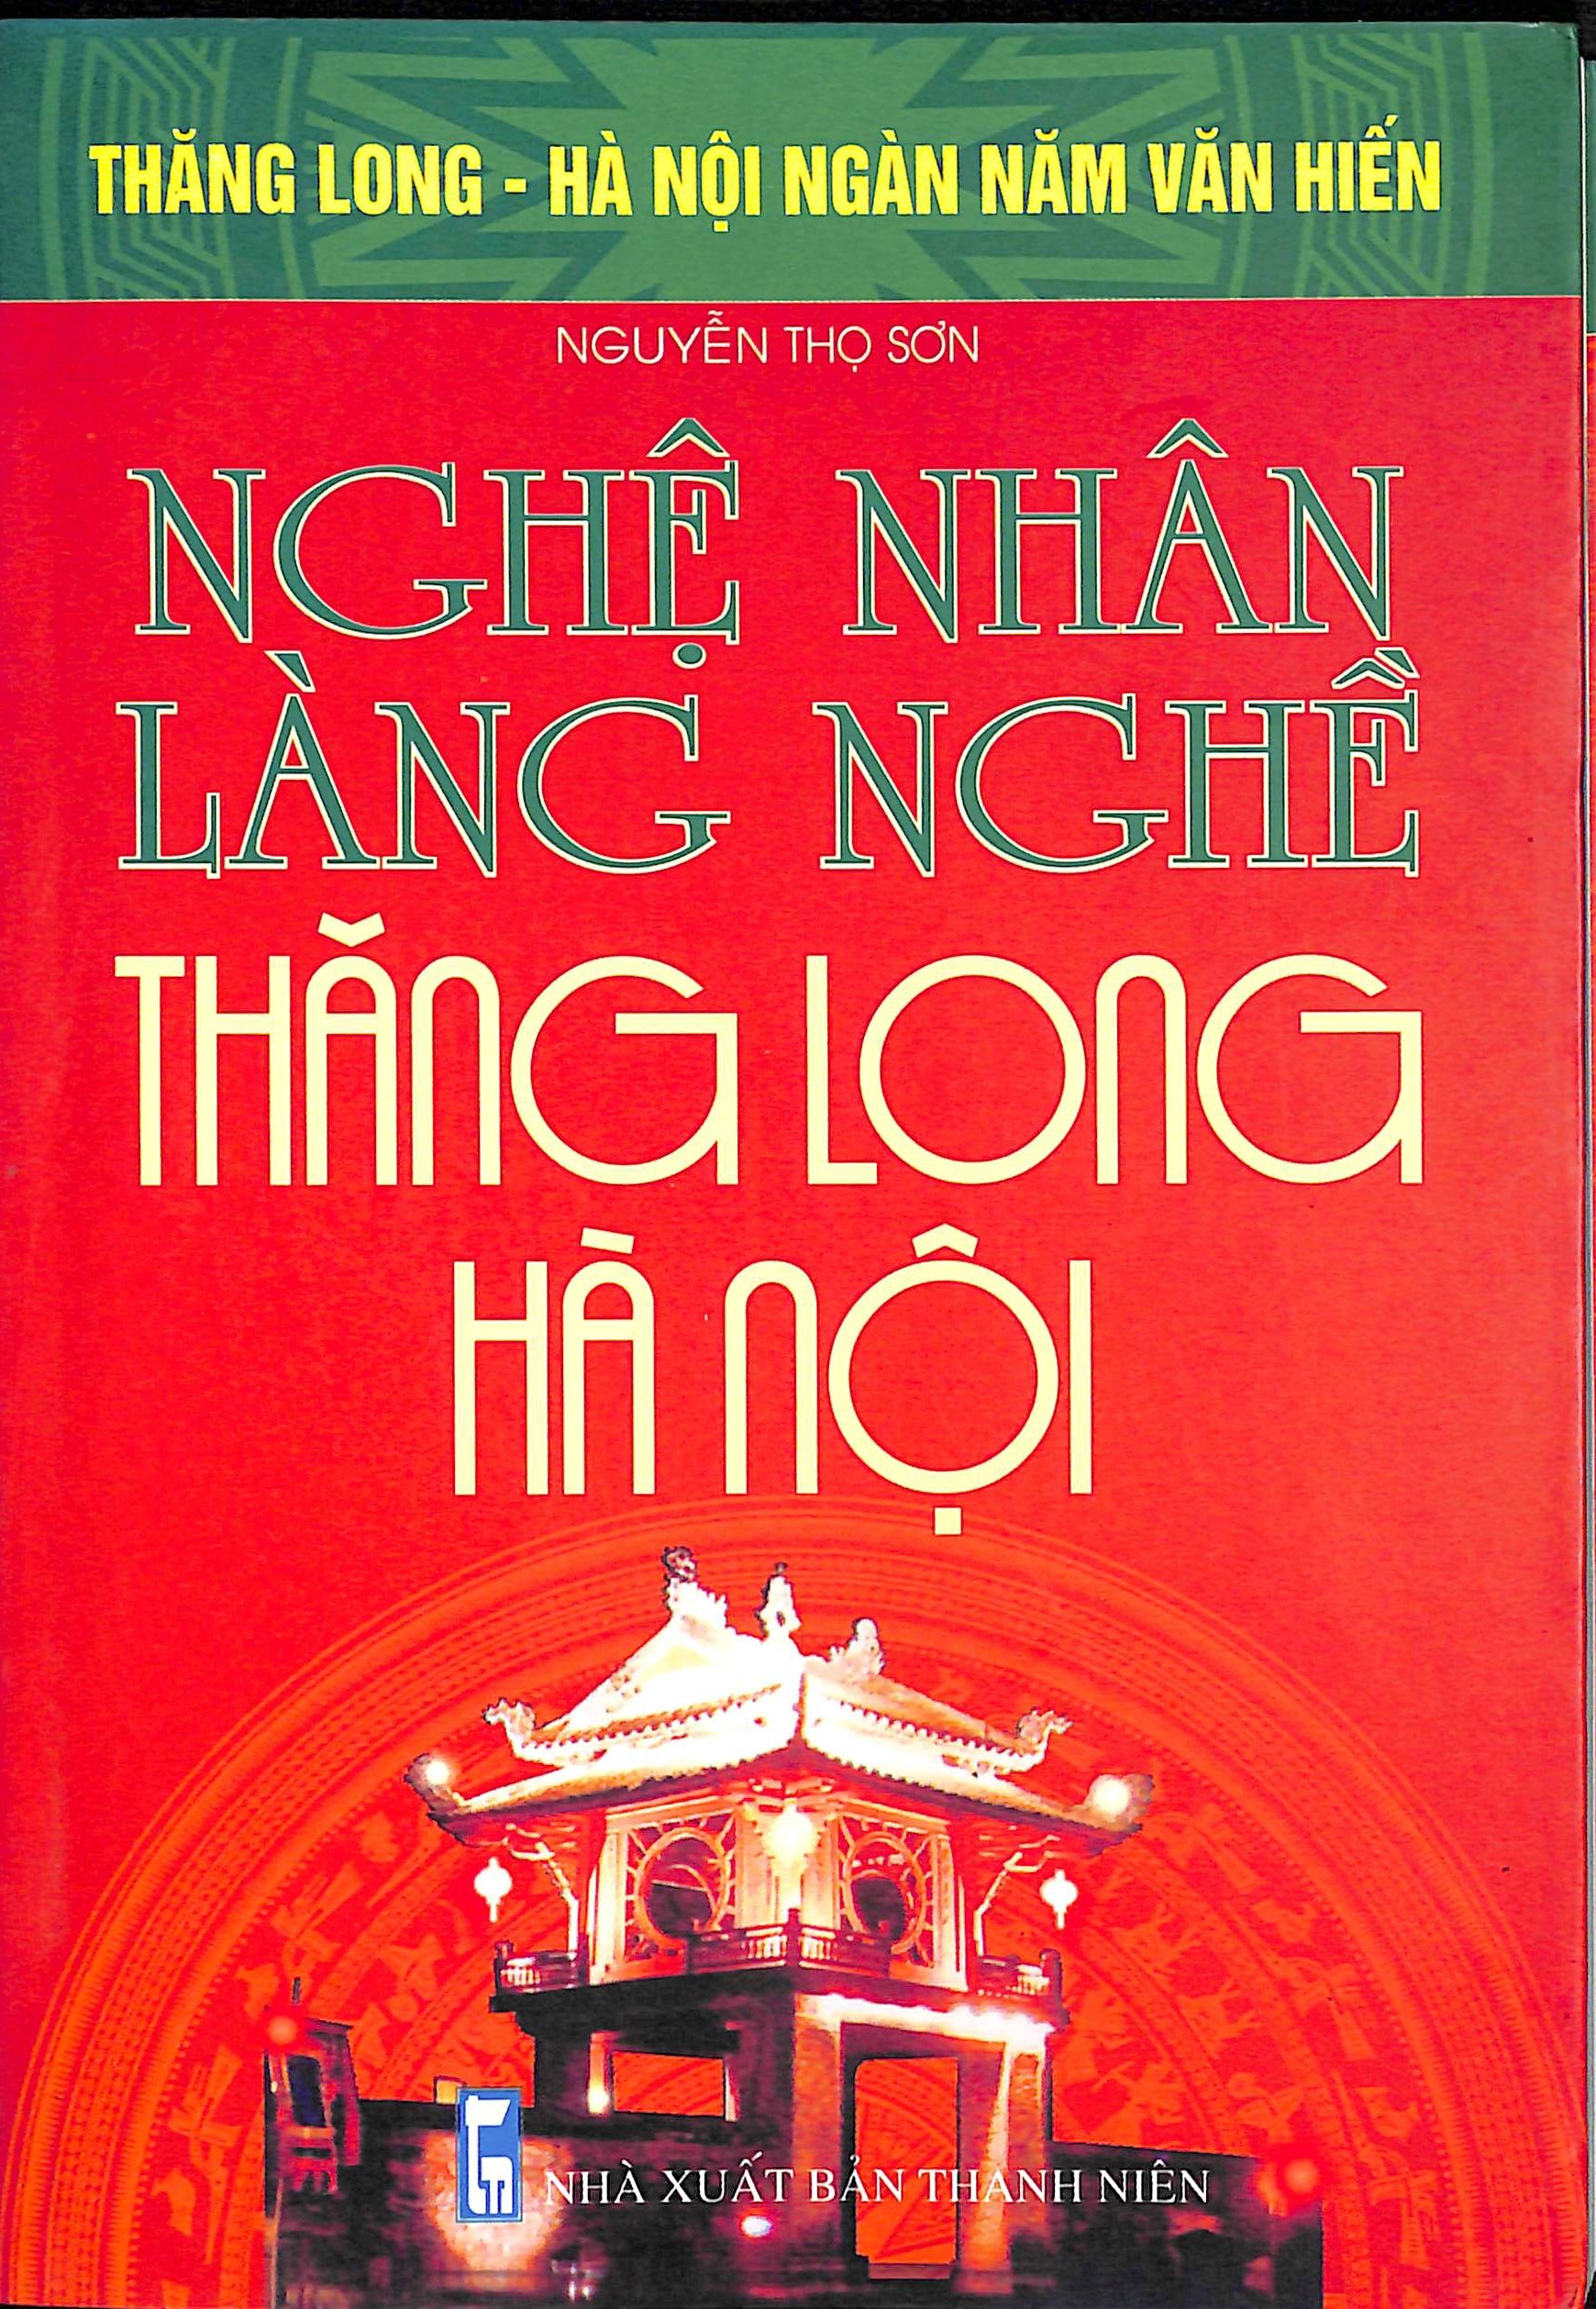 Nghệ nhân làng nghề Thăng Long - Hà Nội